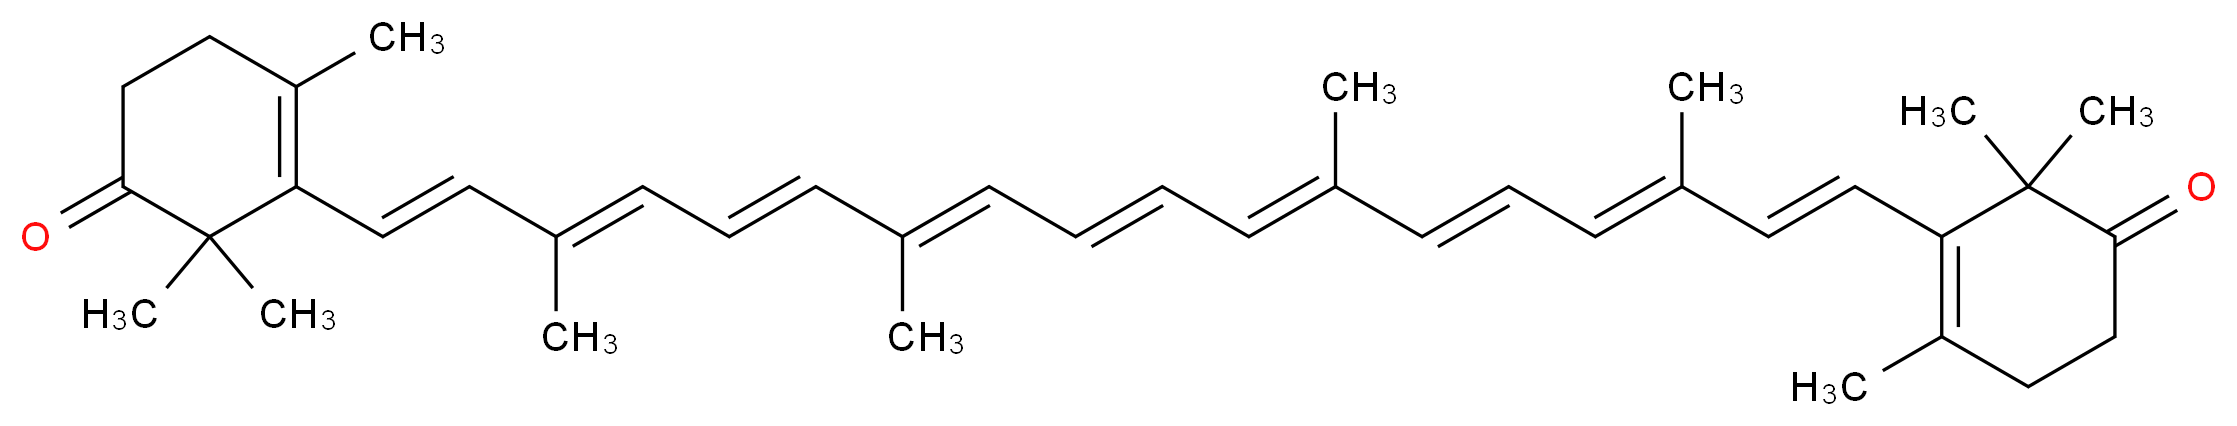 2,2,4-trimethyl-3-[(1E,3E,5E,7E,9E,11E,13E,15E,17E)-3,7,12,16-tetramethyl-18-(2,6,6-trimethyl-5-oxocyclohex-1-en-1-yl)octadeca-1,3,5,7,9,11,13,15,17-nonaen-1-yl]cyclohex-3-en-1-one_分子结构_CAS_514-78-3